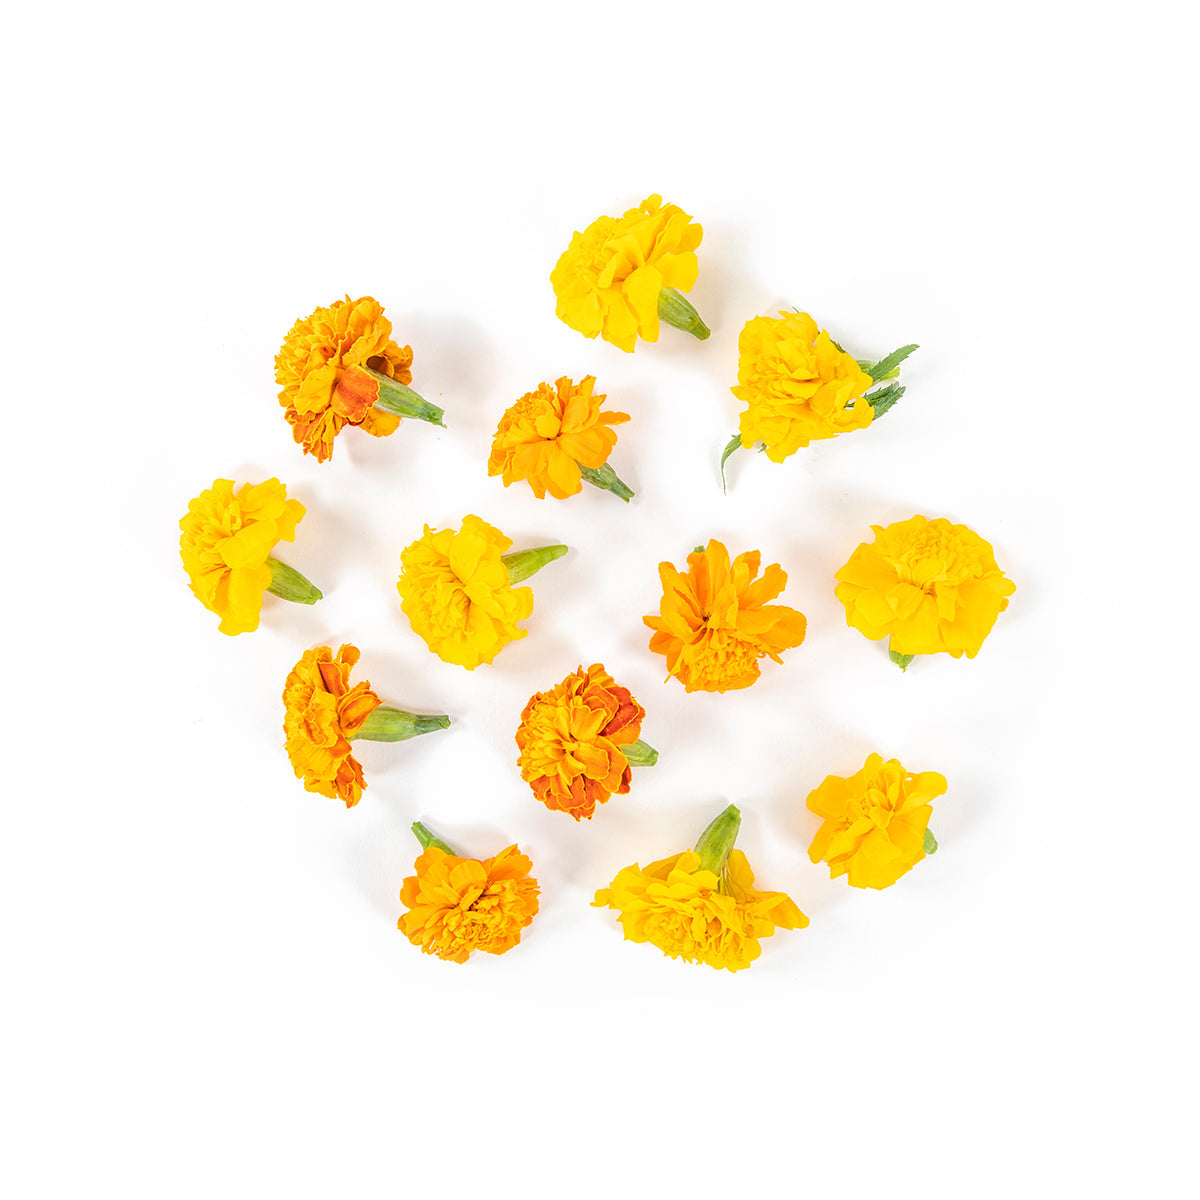 Koppert Cress Marigold Flower Blossoms